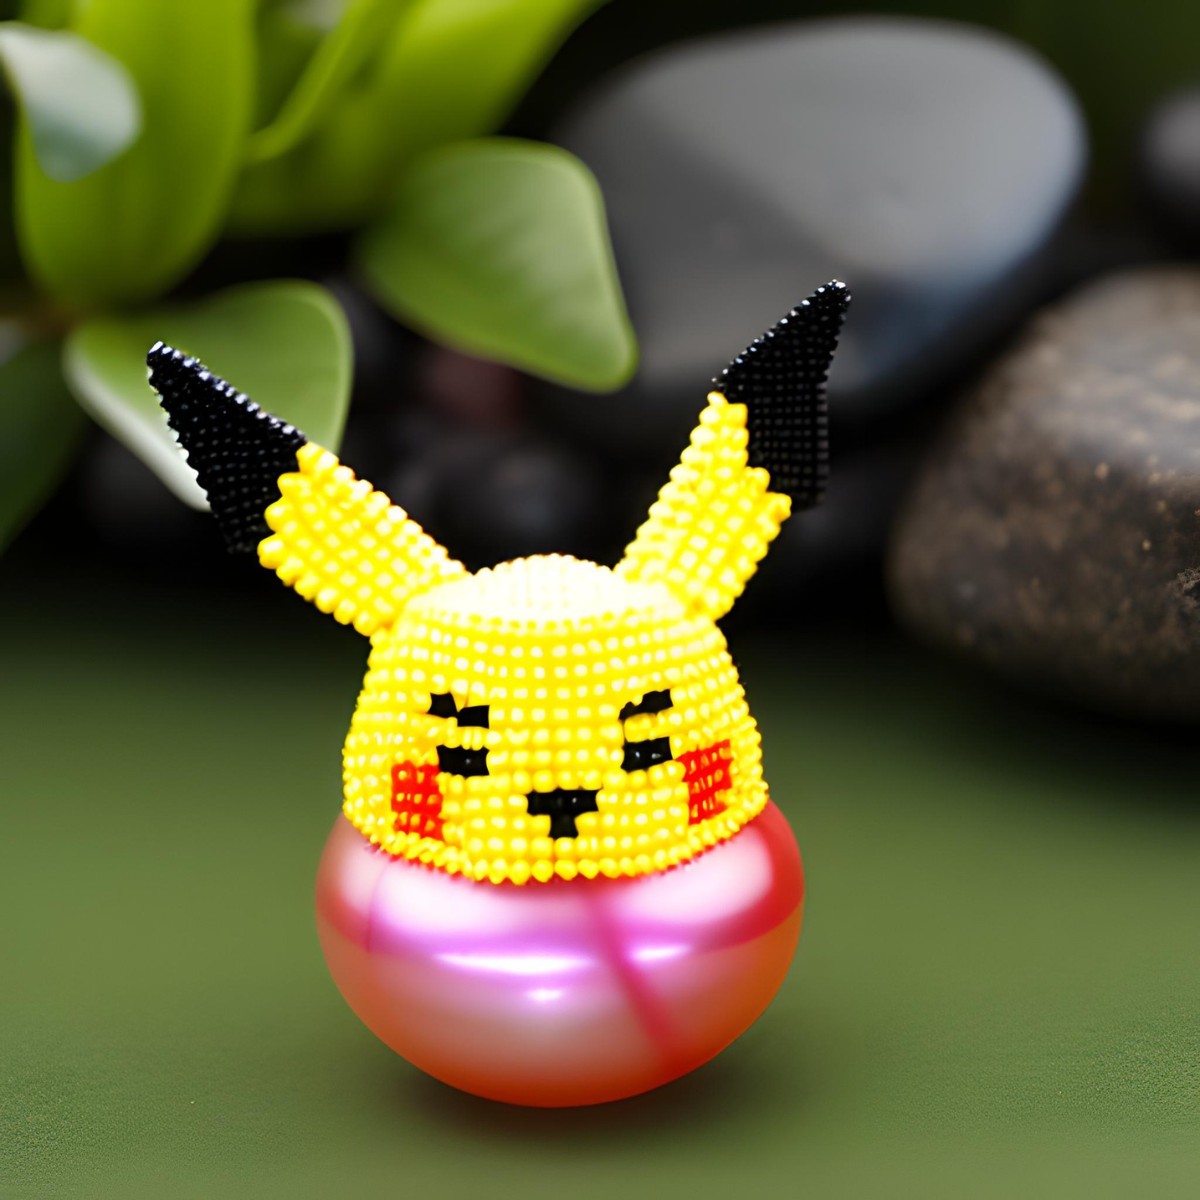 15 Easy Pokemon Perler Bead Patterns Free - DIY Crafts